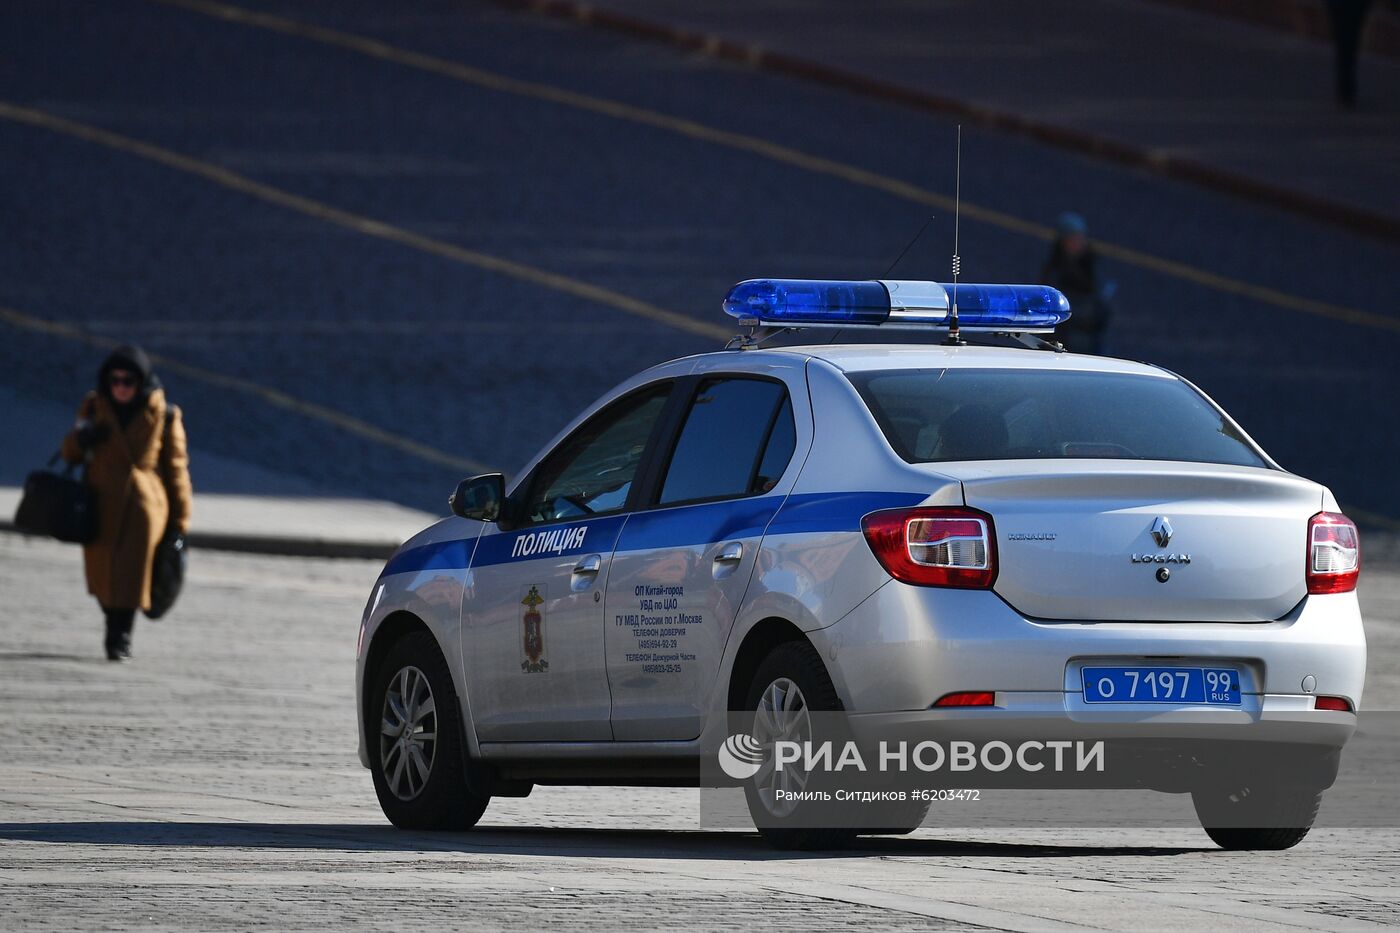 Полиция на улицах Москвы